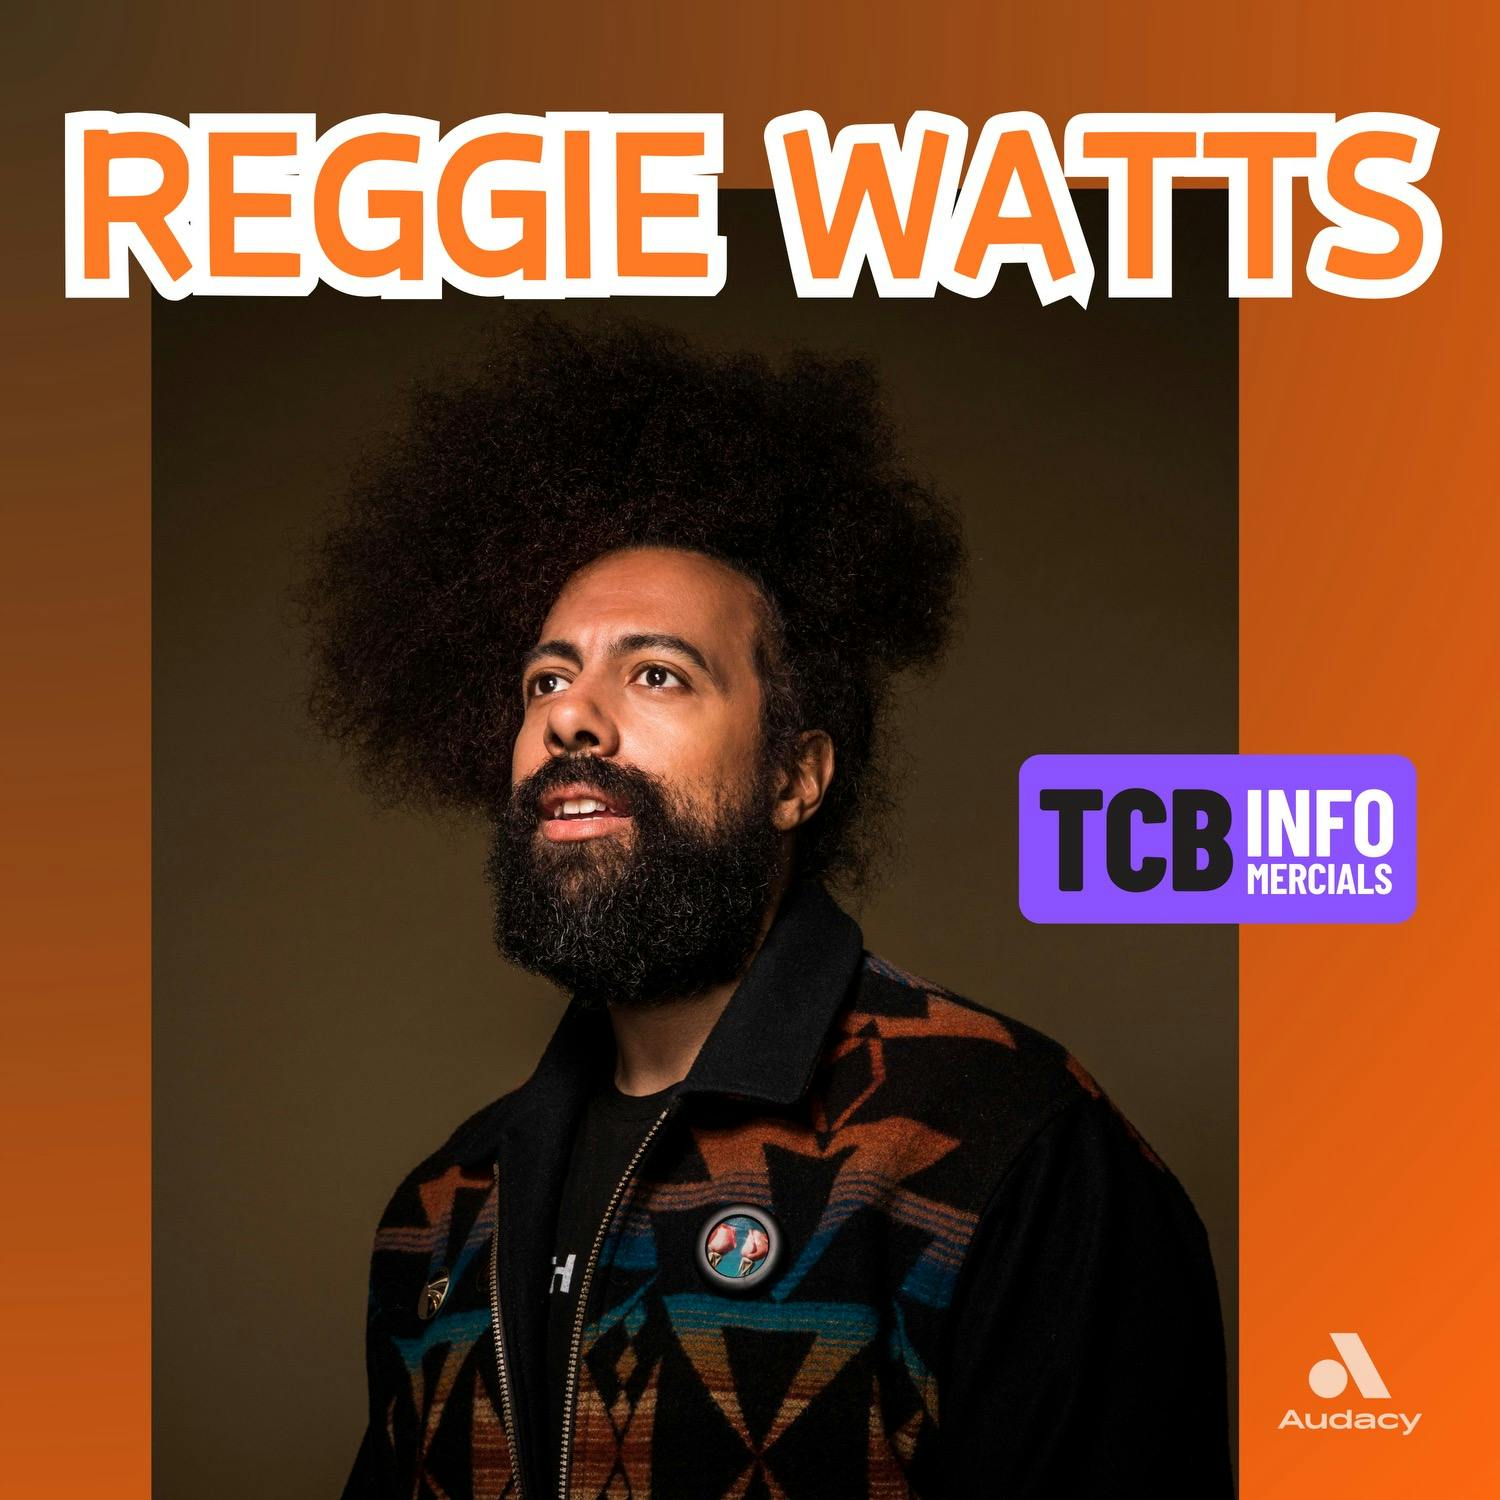 TCB Infomercial w. Reggie Watts